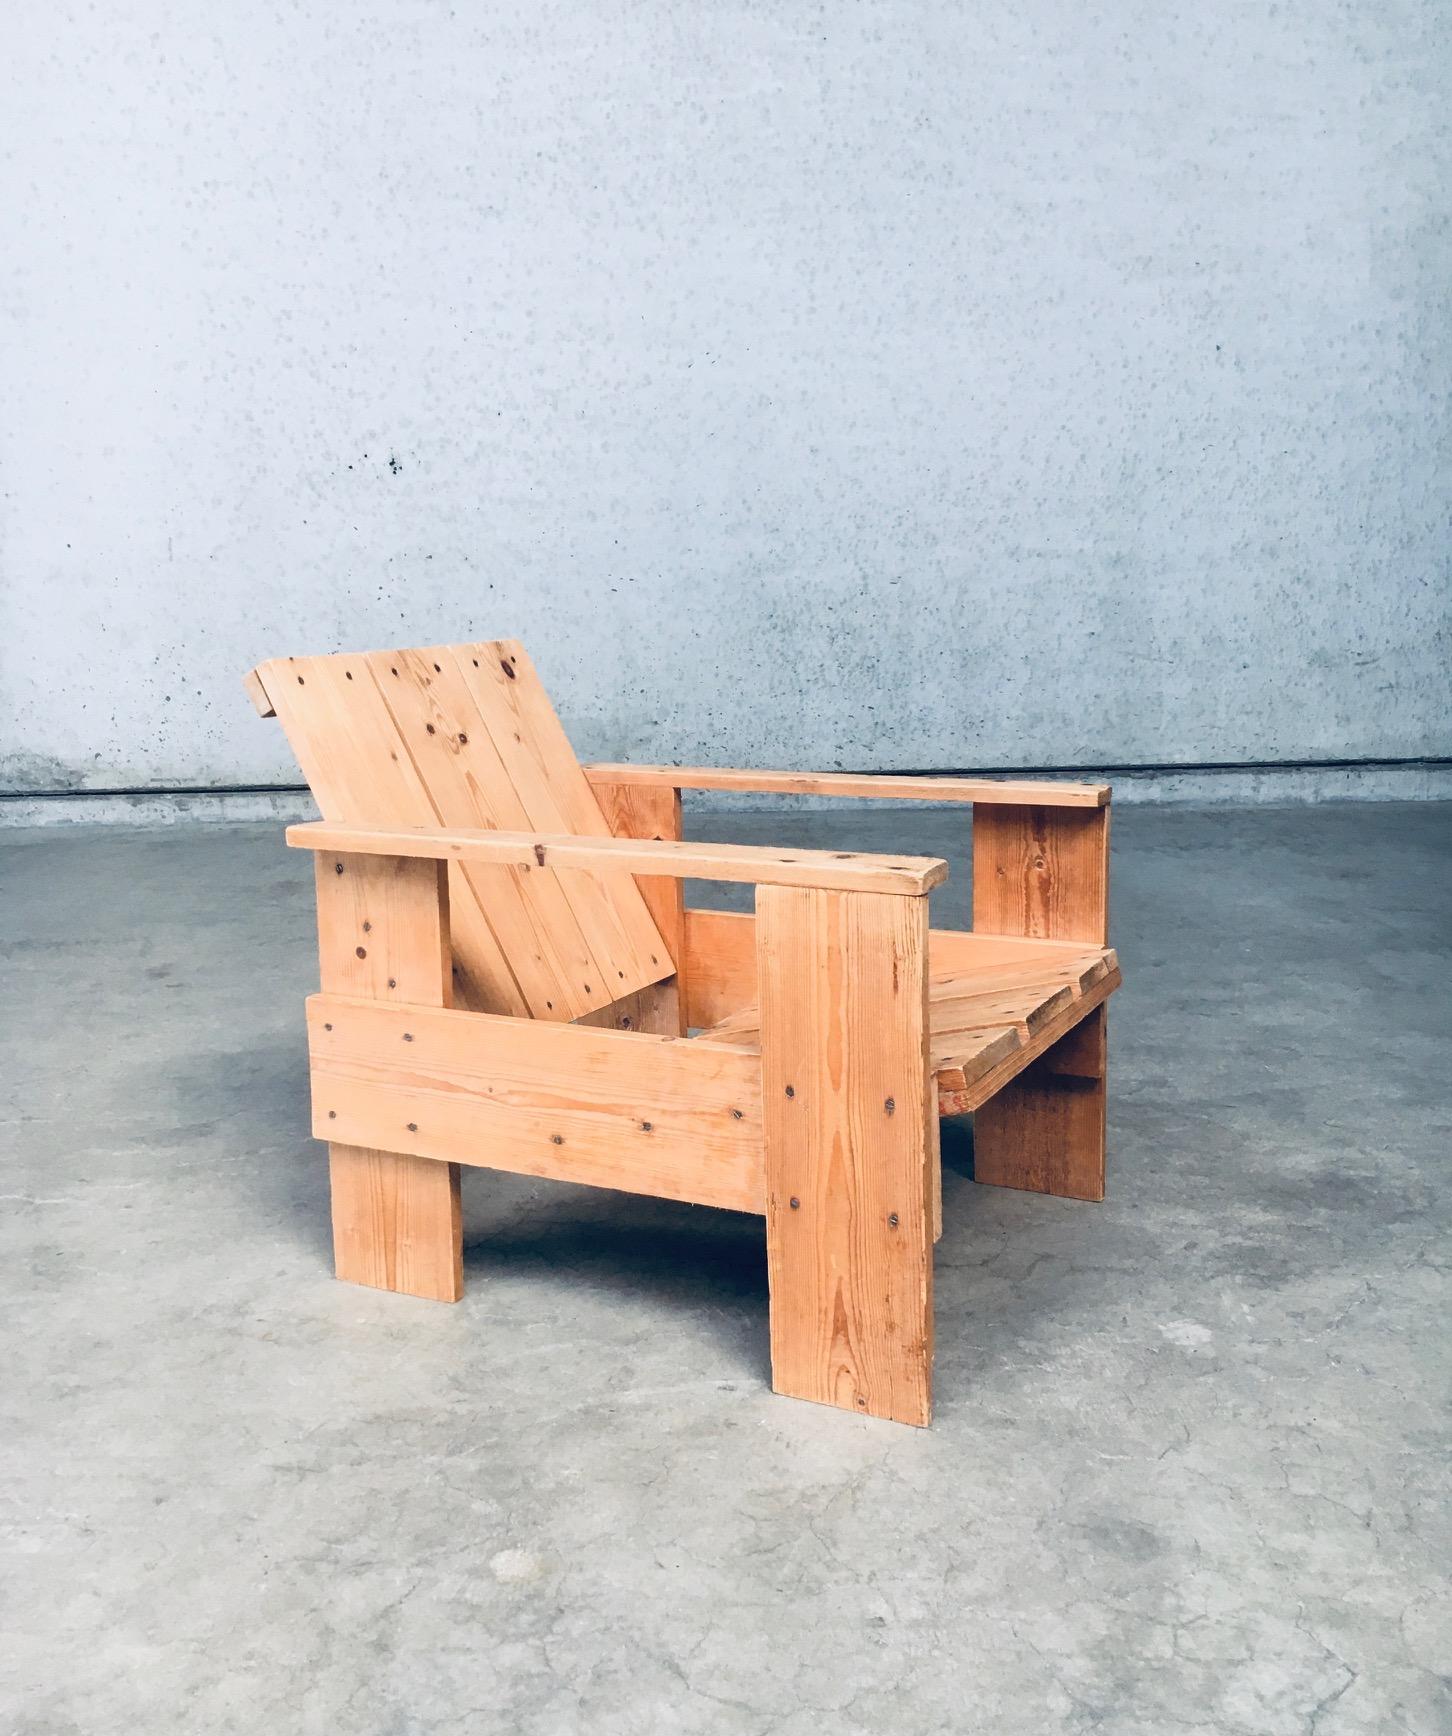 De Stijl Movement Dutch Design Pine CRATE Chair by Gerrit Rietveld For Sale 3